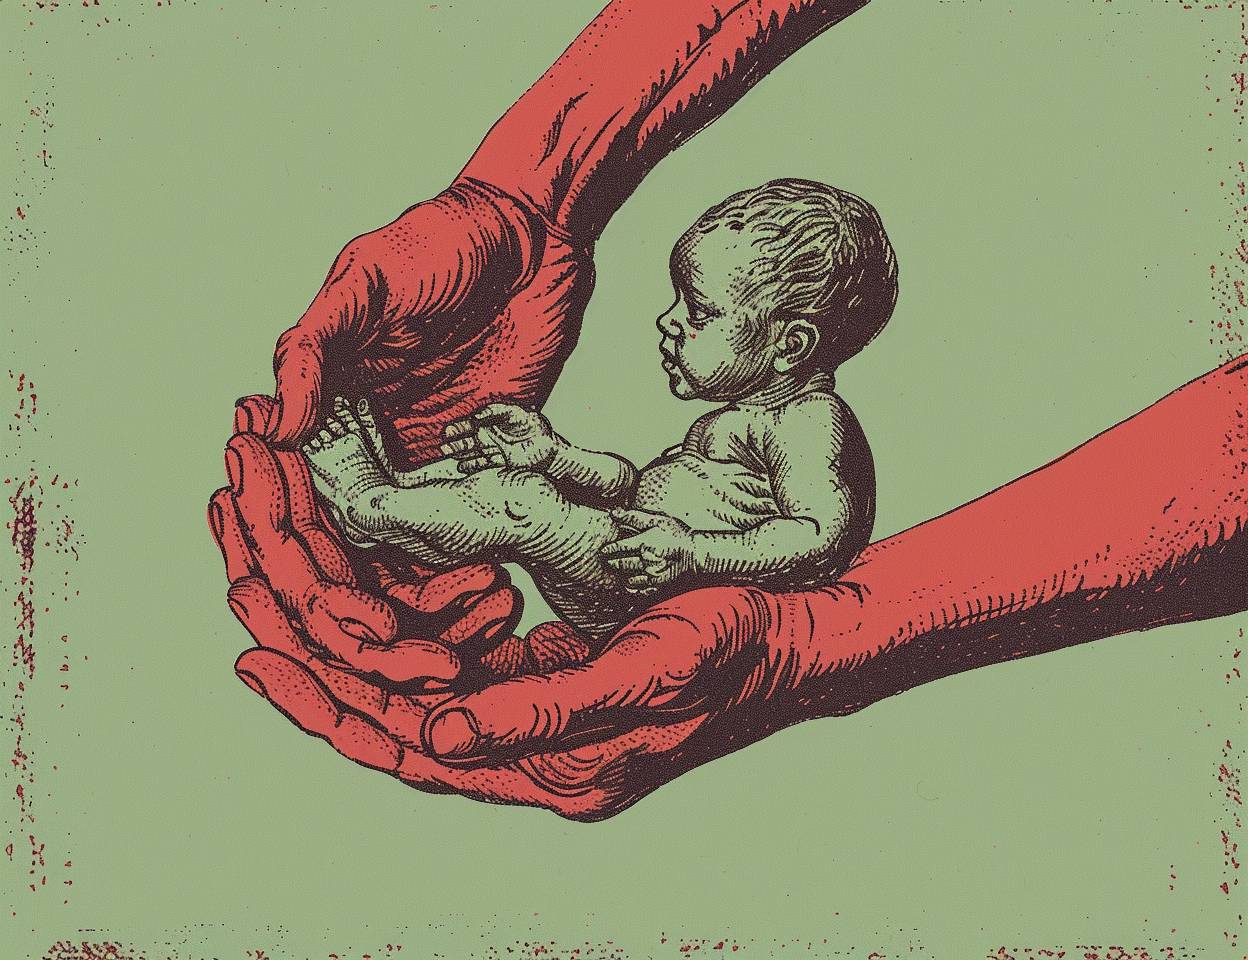 インクとペンスタイルで描かれた、R Crumbスタイルの作品の中の初期の人間の赤ちゃんが手の中に描かれているコミックパネル。淡い緑色の背景に深紅色が施されている。このキャラクターは、生活から引用されるかのように描かれており、顔の特徴や体の比率はない。一つの腕が手の中に小さな男の子を抱いている、クローズアップのショットです。